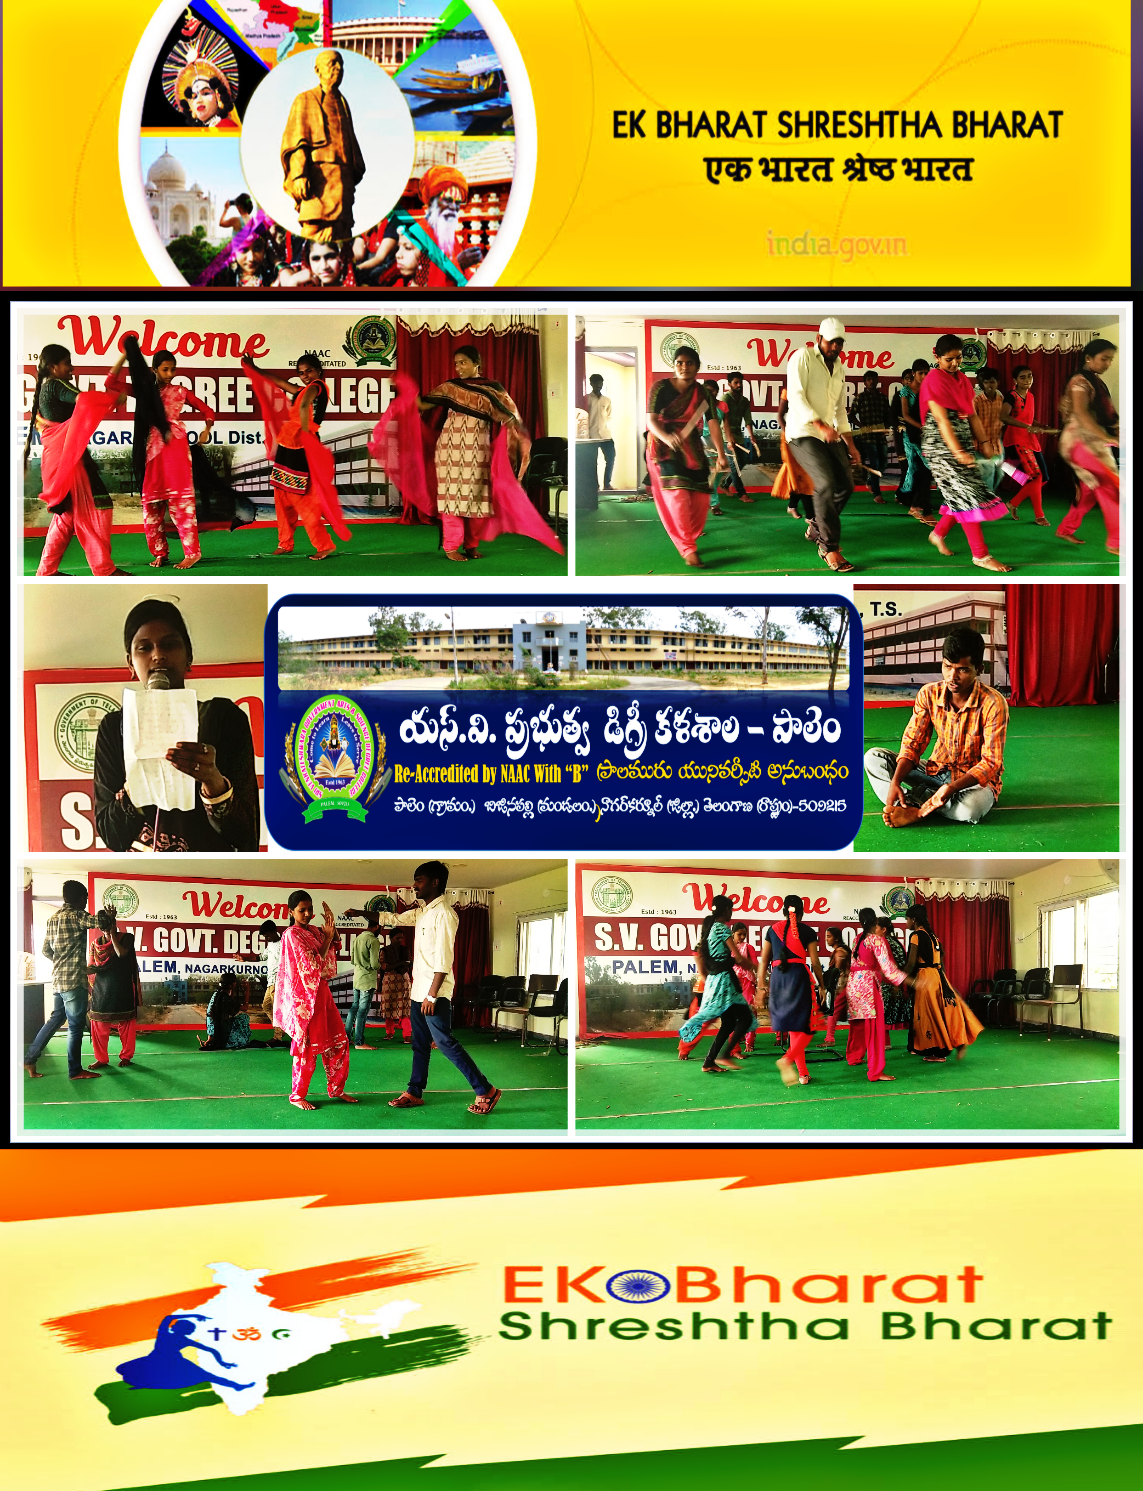 Ek Bharath Shresta Bharath Program